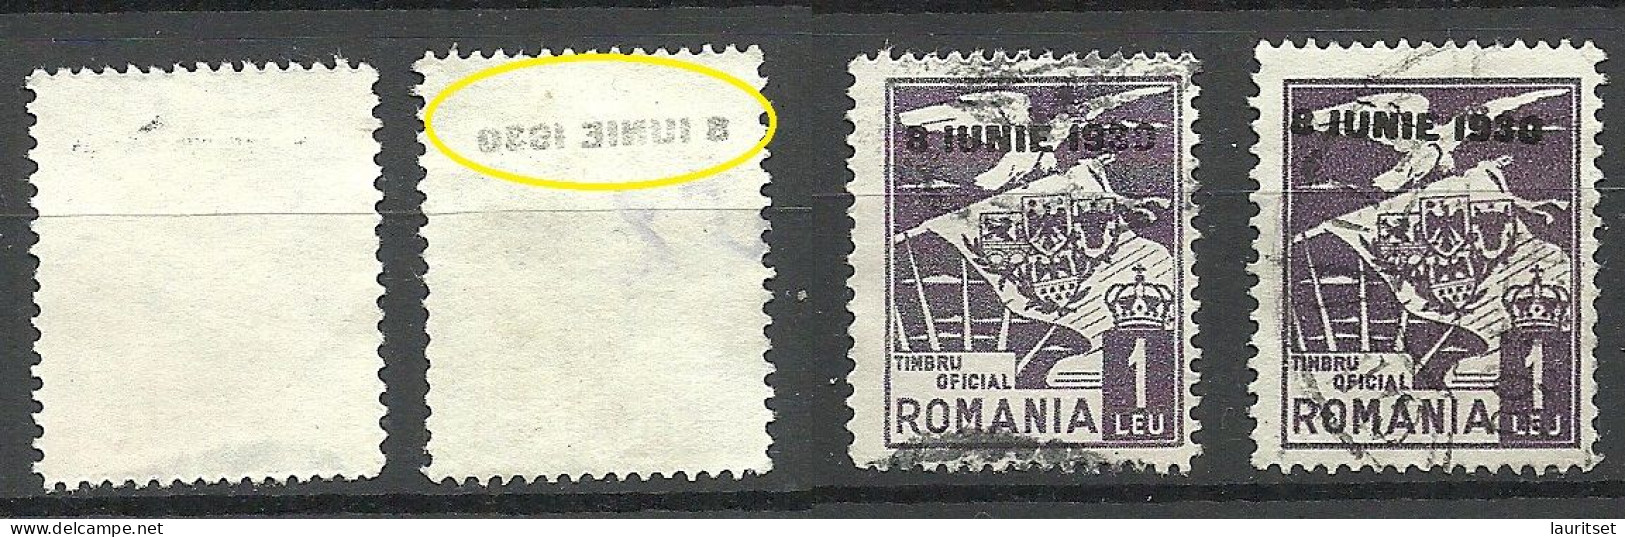 ROMANIA Rumänien 1930 Dienstmarke Normal + Variety Set Off Of OPT Abklatsch D. Aufdruckes - Officials